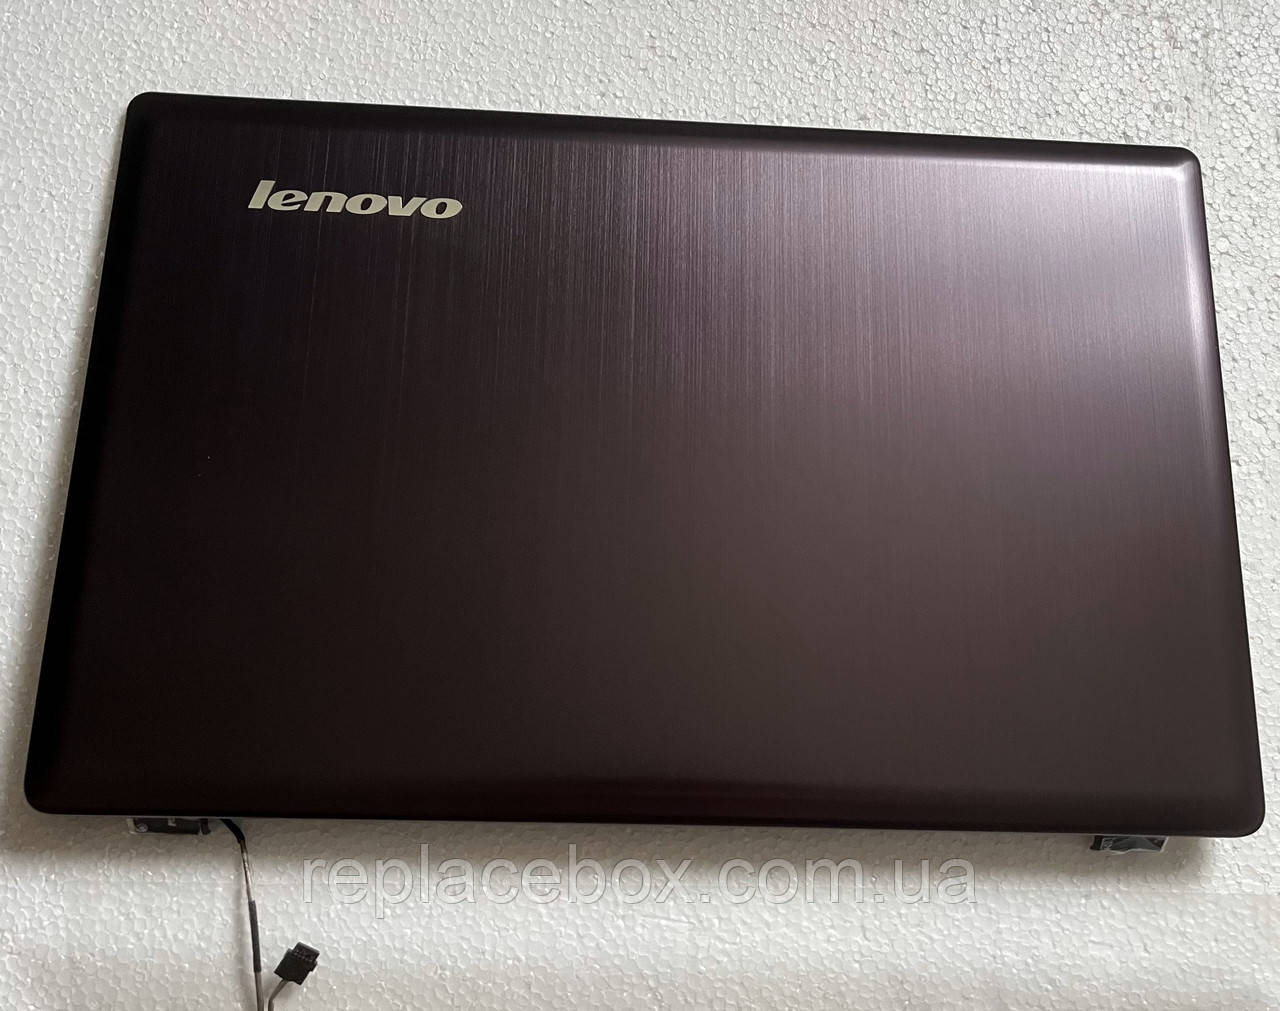 Кришка матриці екрана (Top Cover A) шлейф для ноутбука Lenovo IdeaPad Z580/Z585 FRU:90200643 нова оригінал